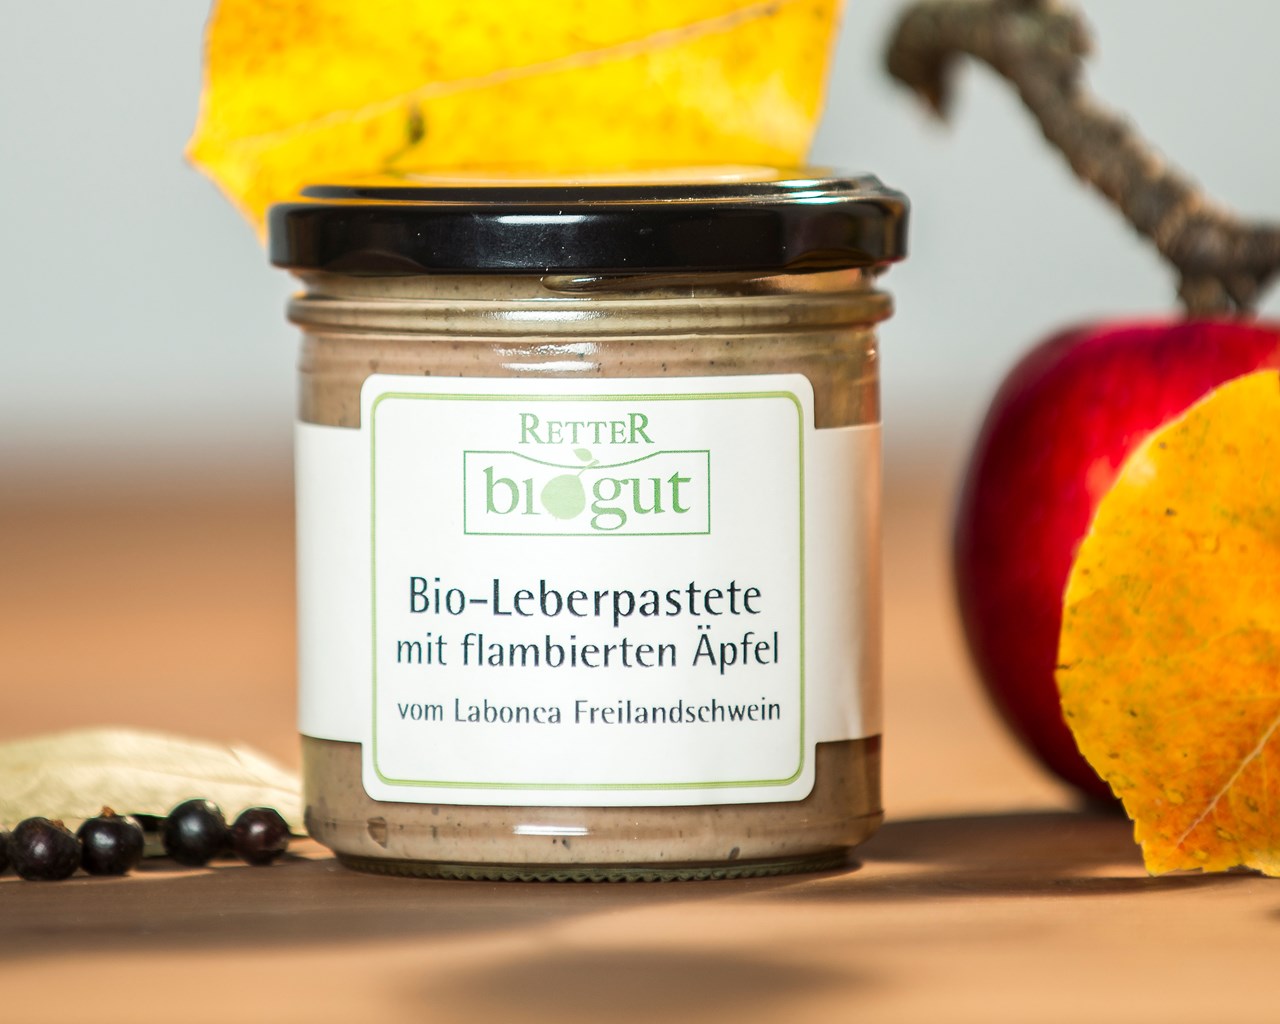 Retter BioGut Produkt-Beispiele Bio Leberpastete mit flambierten Bratäpfeln